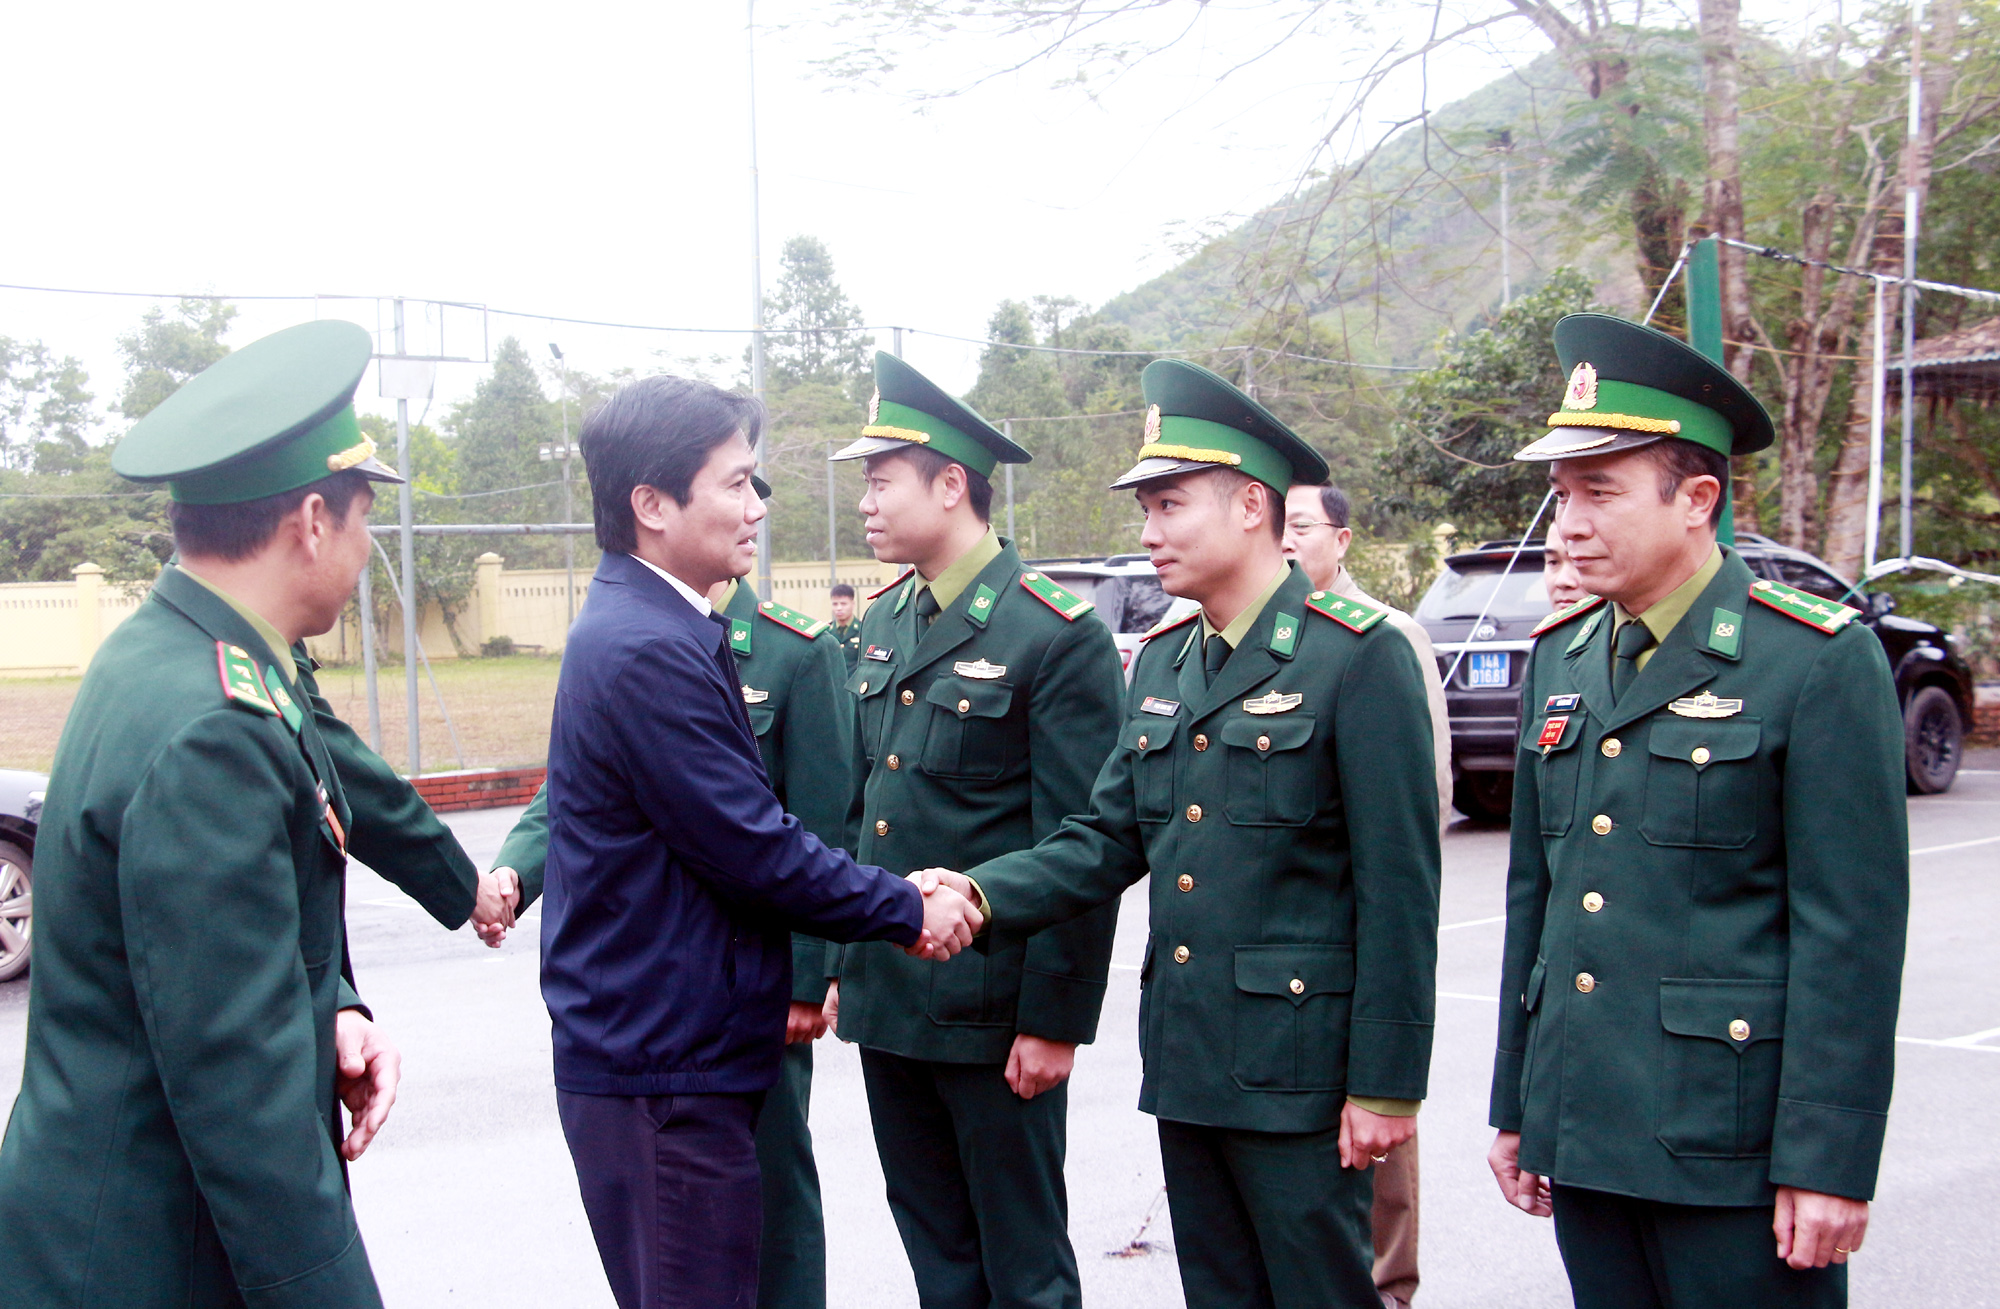 Đồng chí Nguyễn Tường Văn, Chủ tịch UBND tỉnh, thăm, động viên cán bộ, chiến sỹ Đồn Biên phòng Pò Hèn.